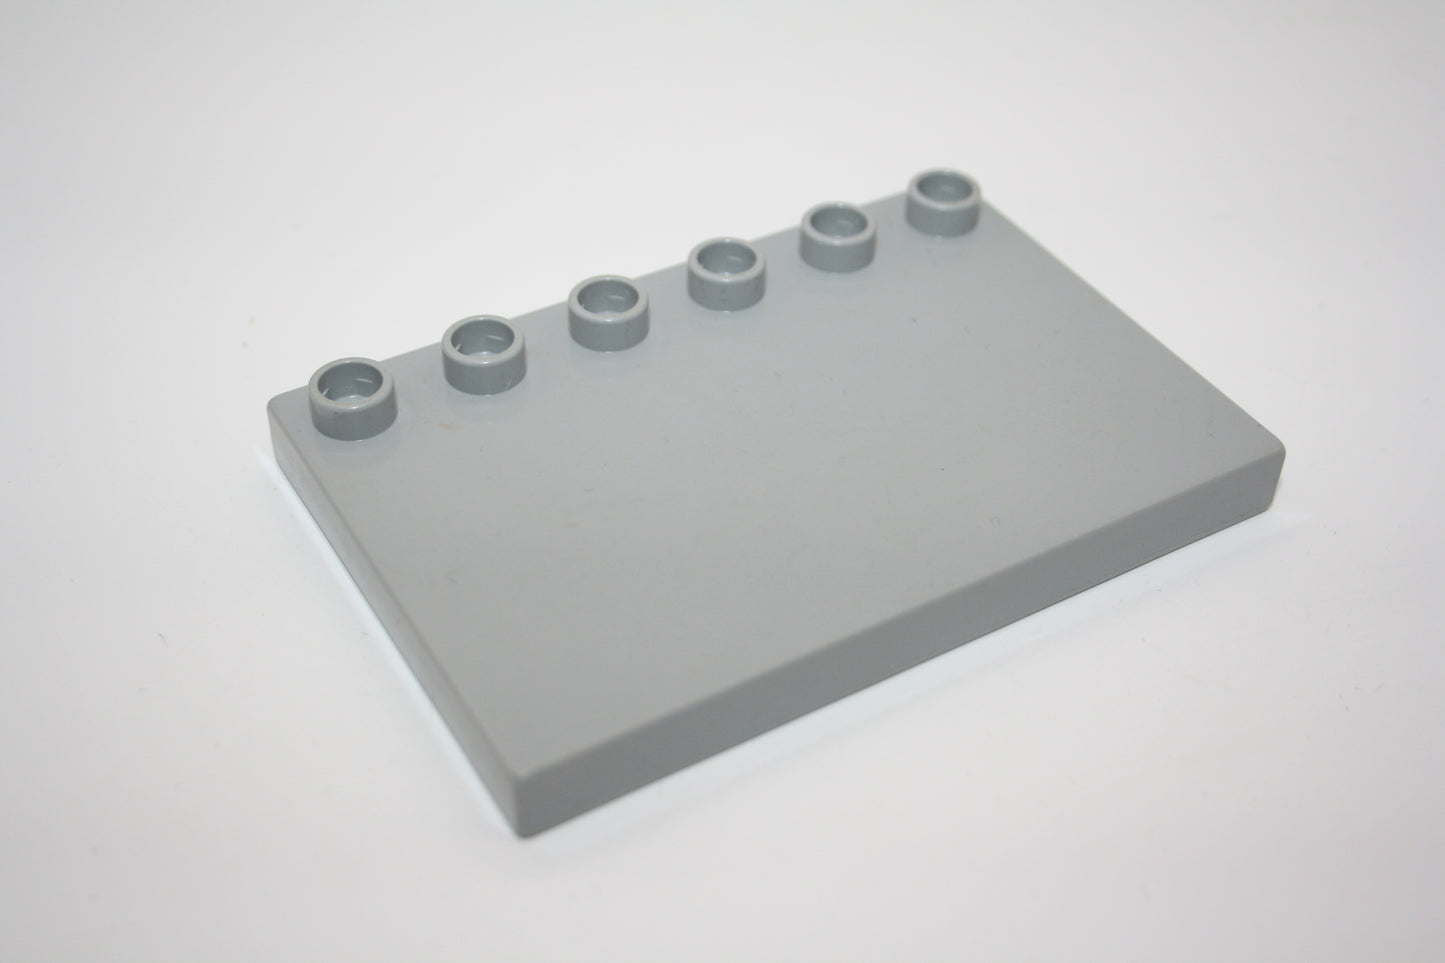 Duplo - 4x6 Platten/Dachplatten  - versch. Farben - Bauplatten - Grundplatten